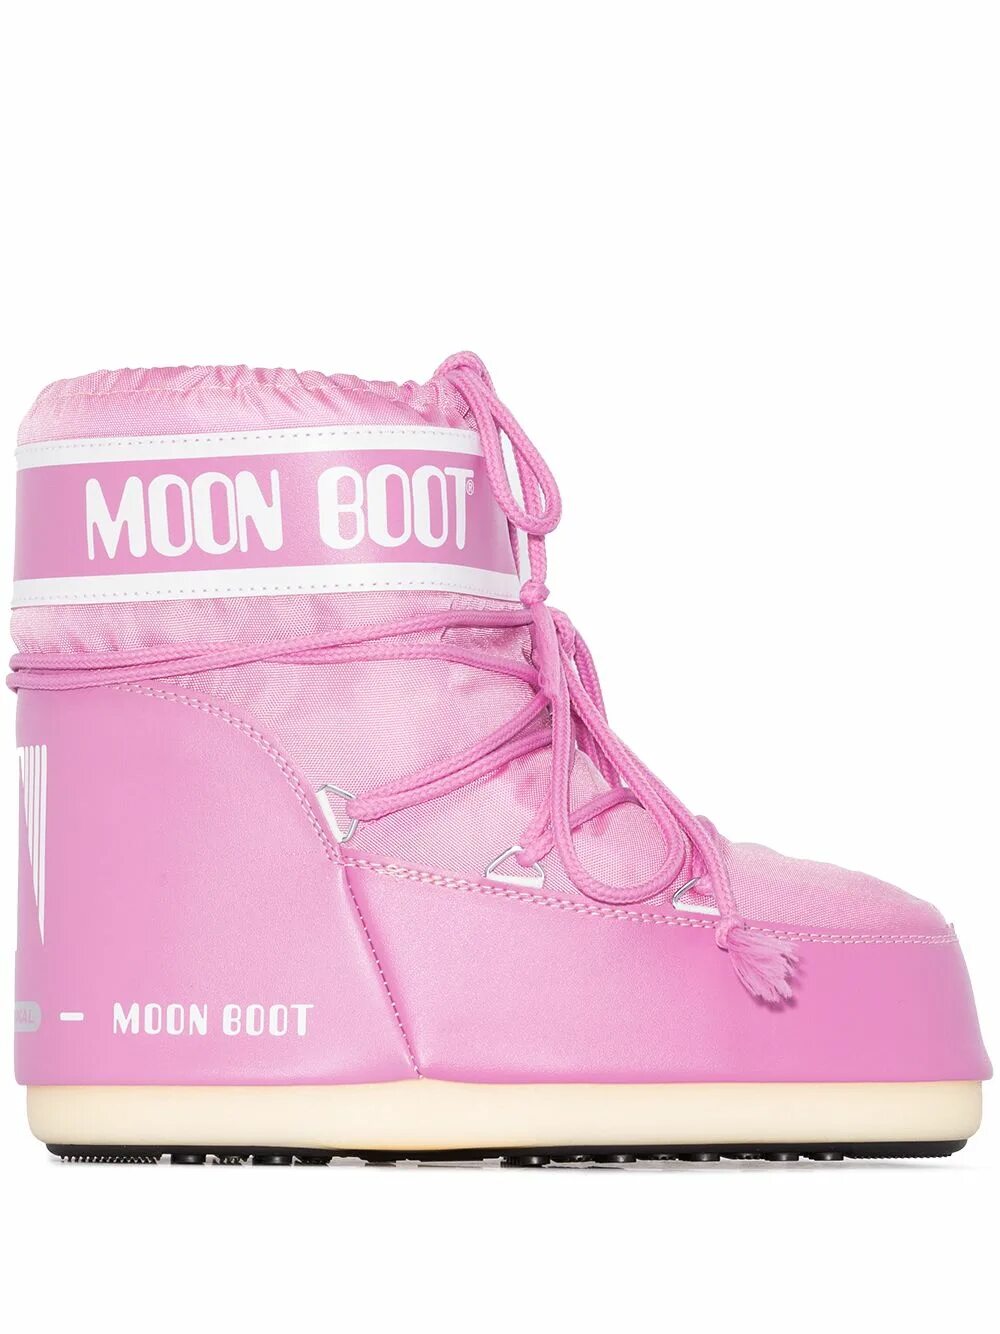 Муны обувь. Обувь Moon Boot. Ботинки Moon Boot Low. Луноходы Moon Boot. Moon Boot женские розовые.